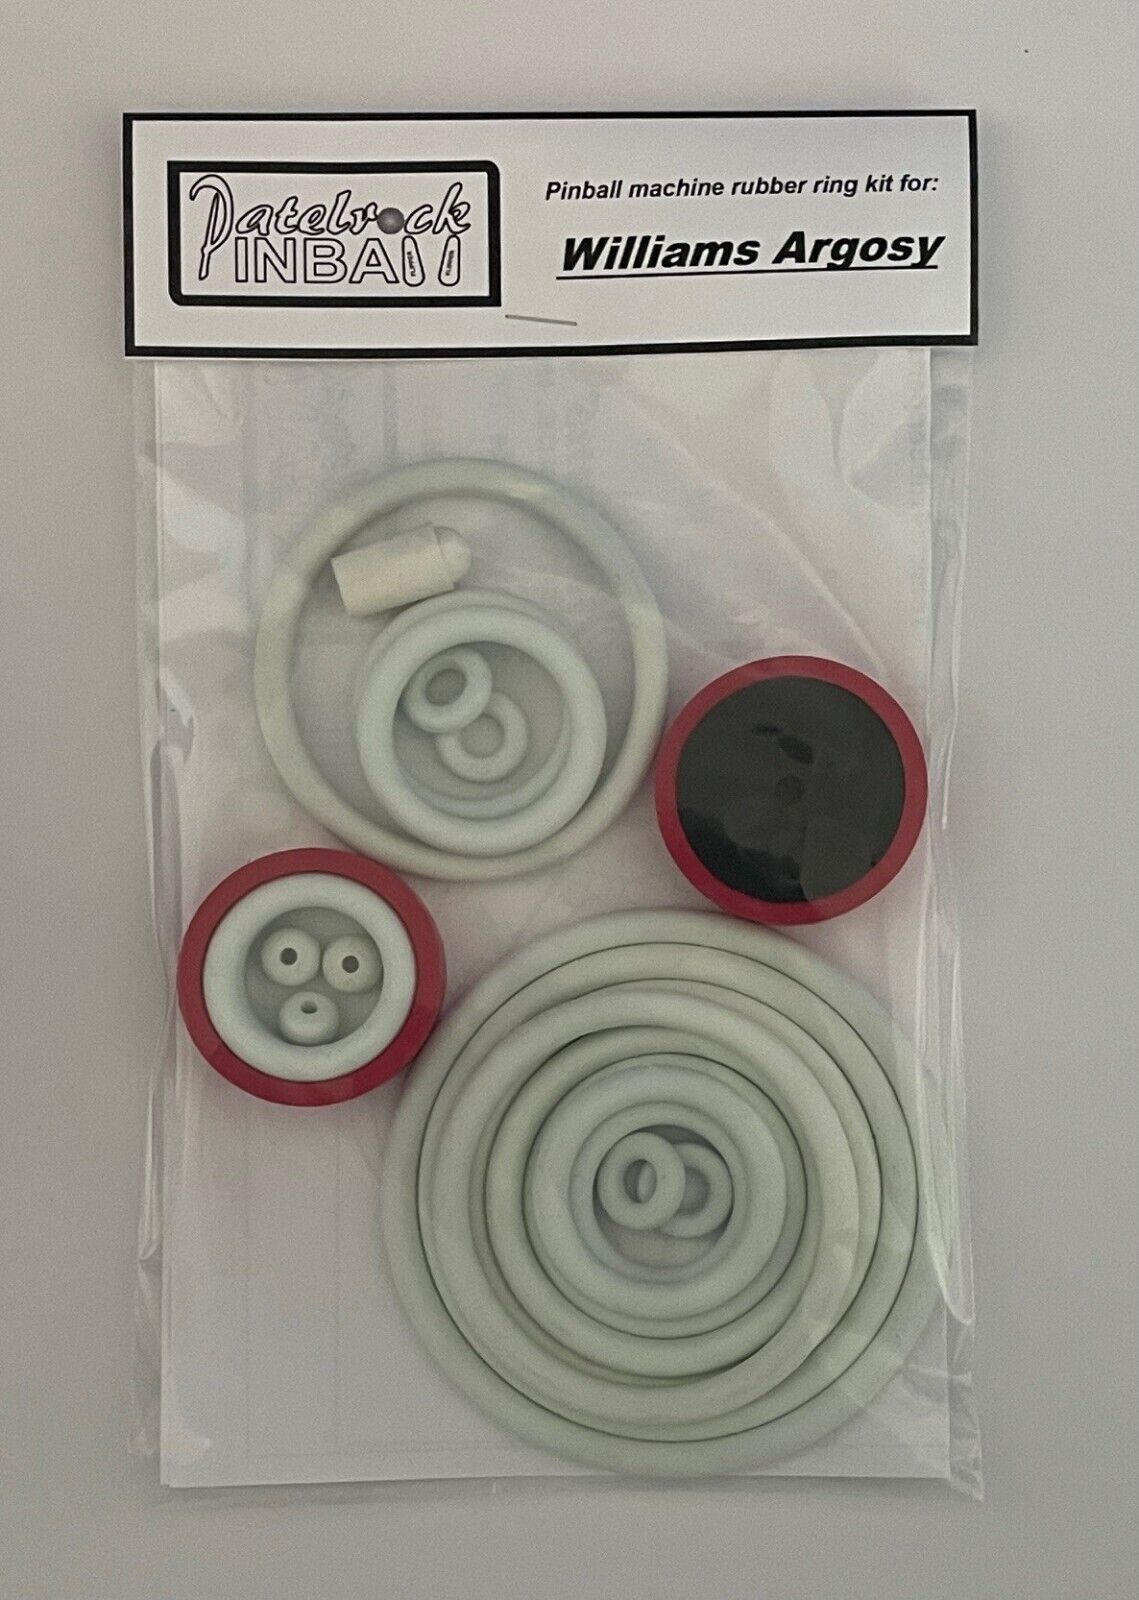 1977 Williams Argosy Pinball Machine Rubber Ring Kit